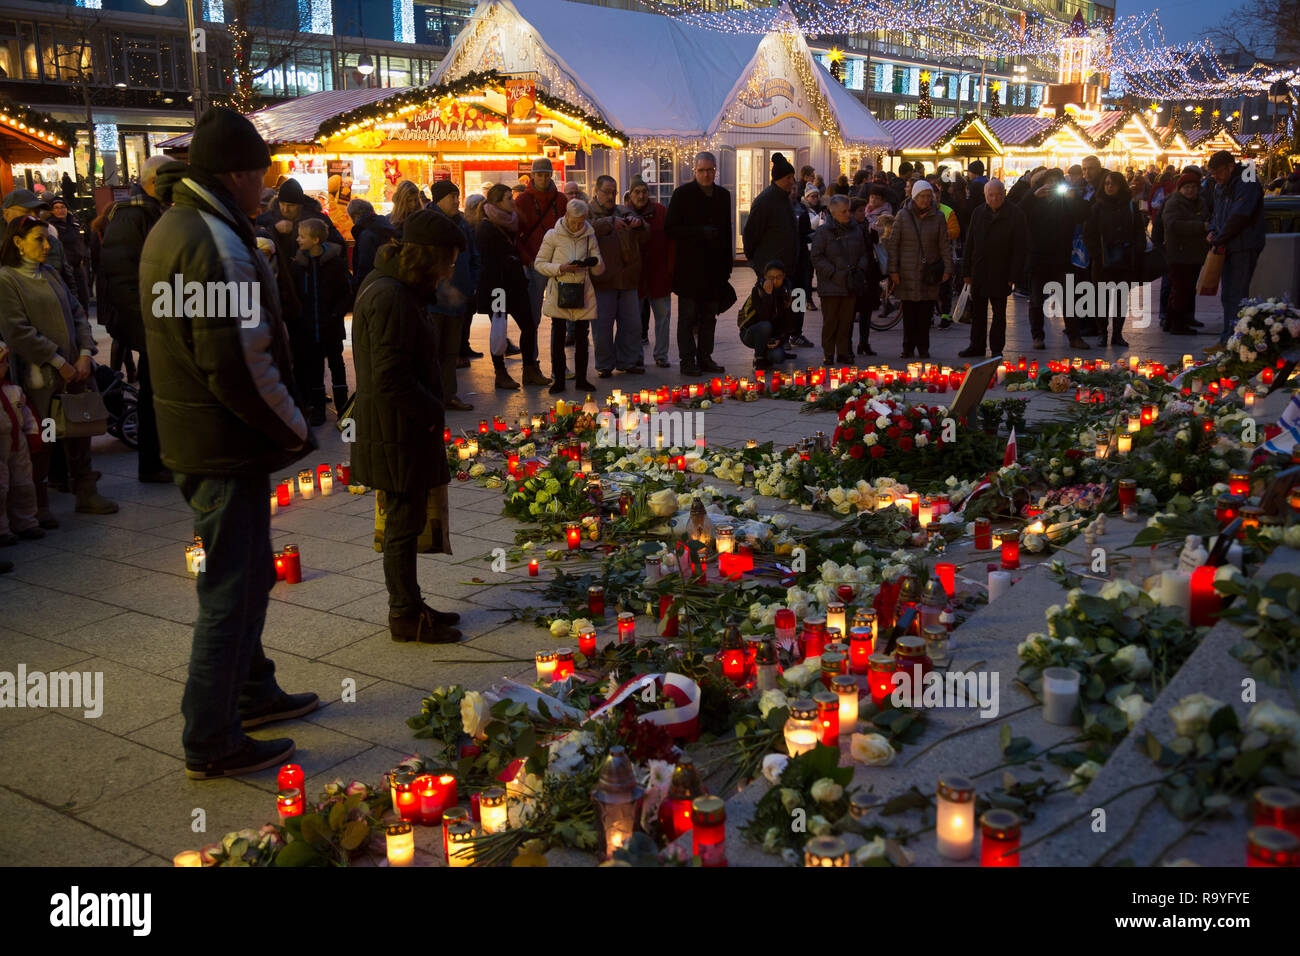 20.12.2017, Berlin, Berlin, Deutschland - Gedenken an die Opfer des Terroranschlags am Weihnachtsmarkt am Breitscheidplatz am 19.12.2016. Kerzen am An Stock Photo